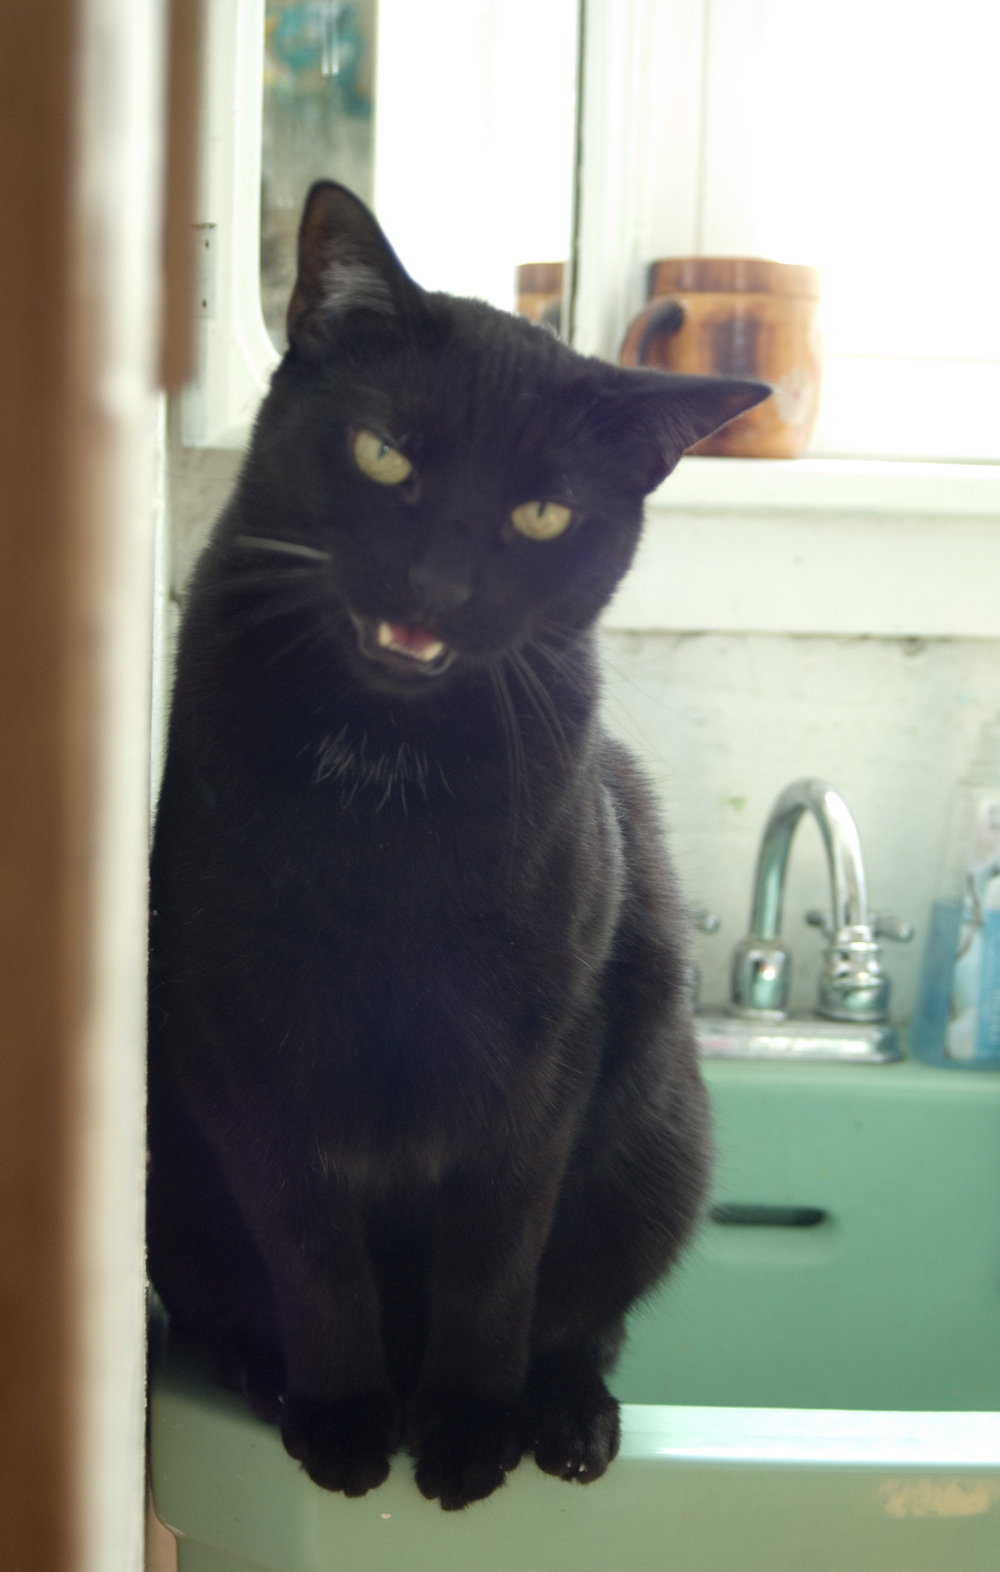 black cat on sink talking